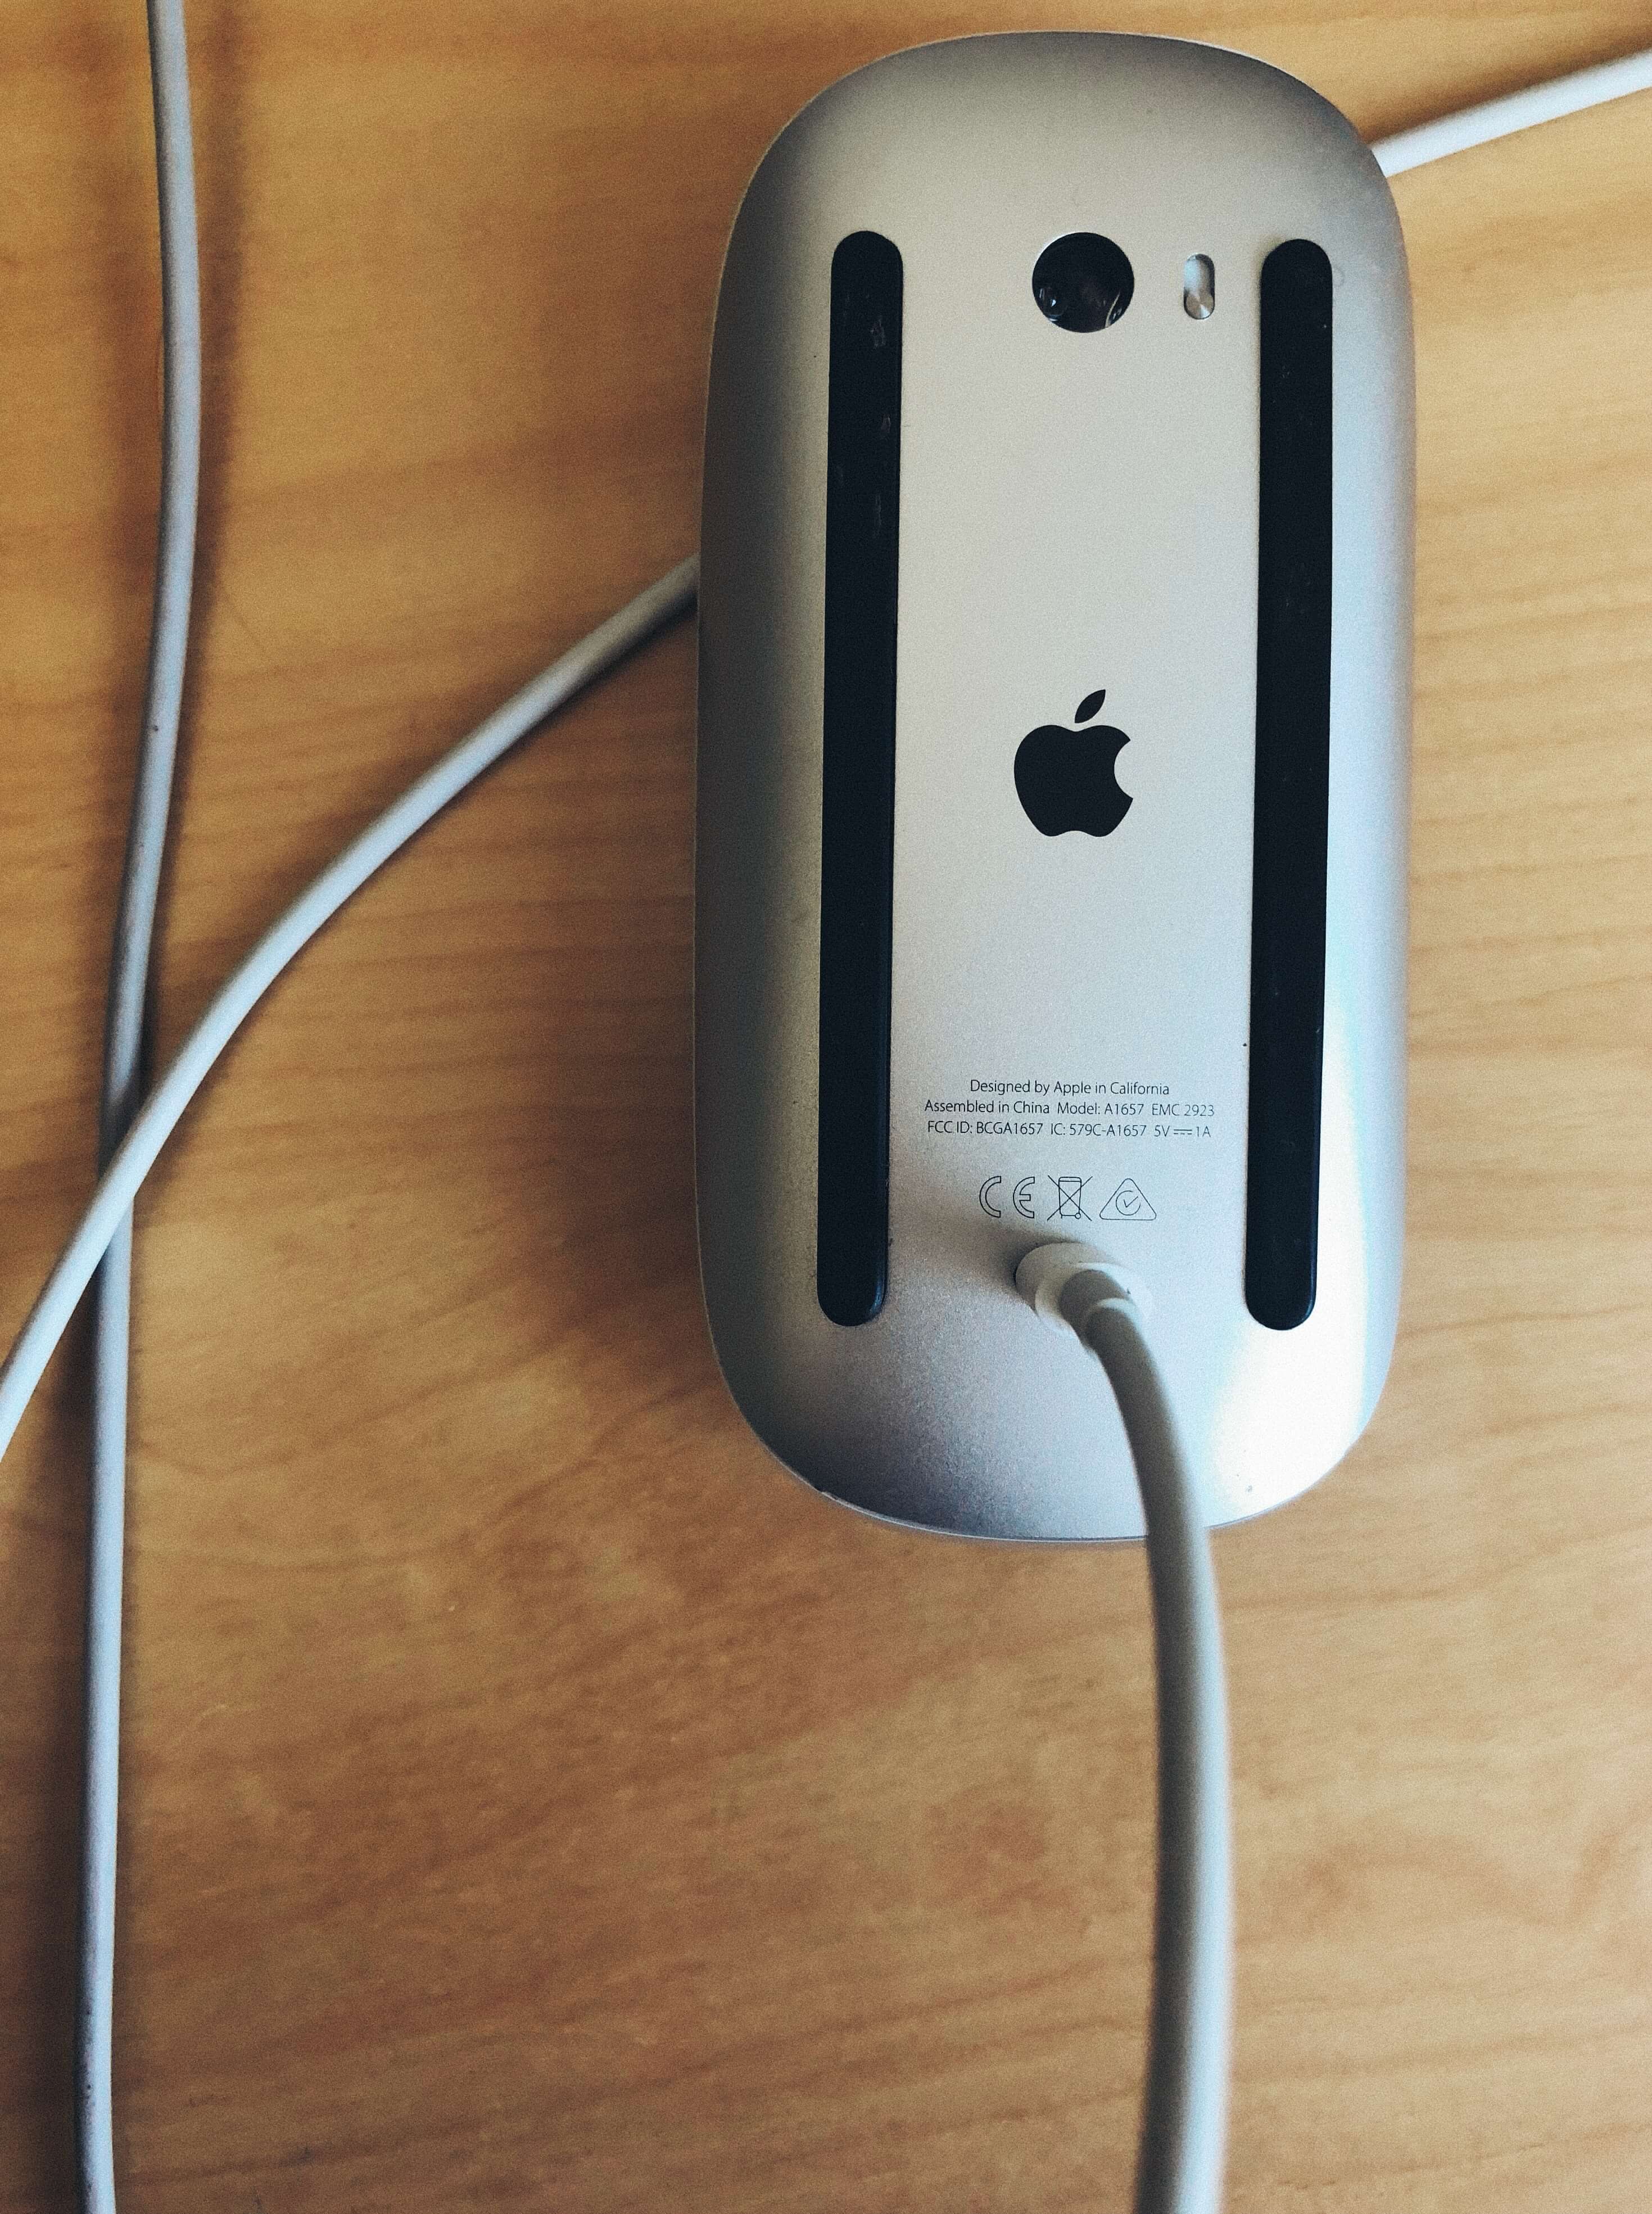 De Magic Mouse wordt opgeladen door de kabel in de onderkant te steken